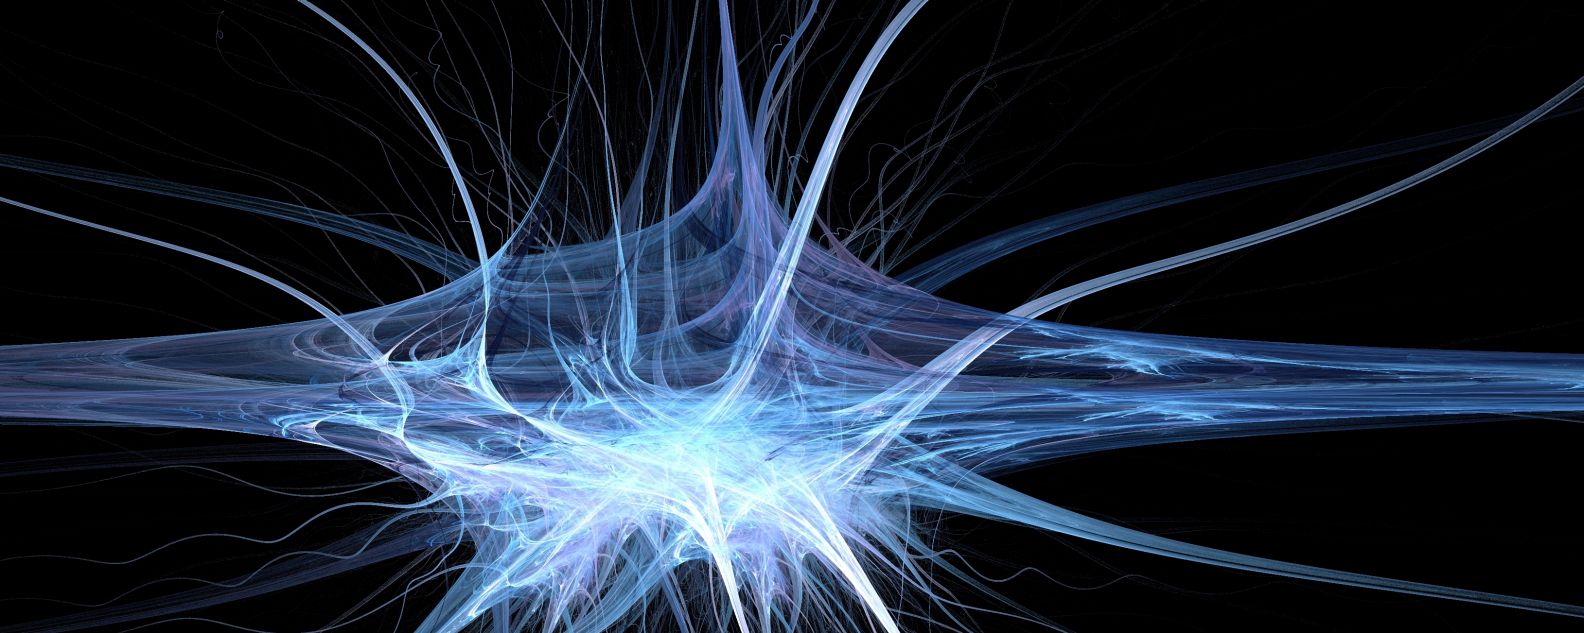 Fraktal, das wie eine Synapse mit vielen Nervenenden aussieht